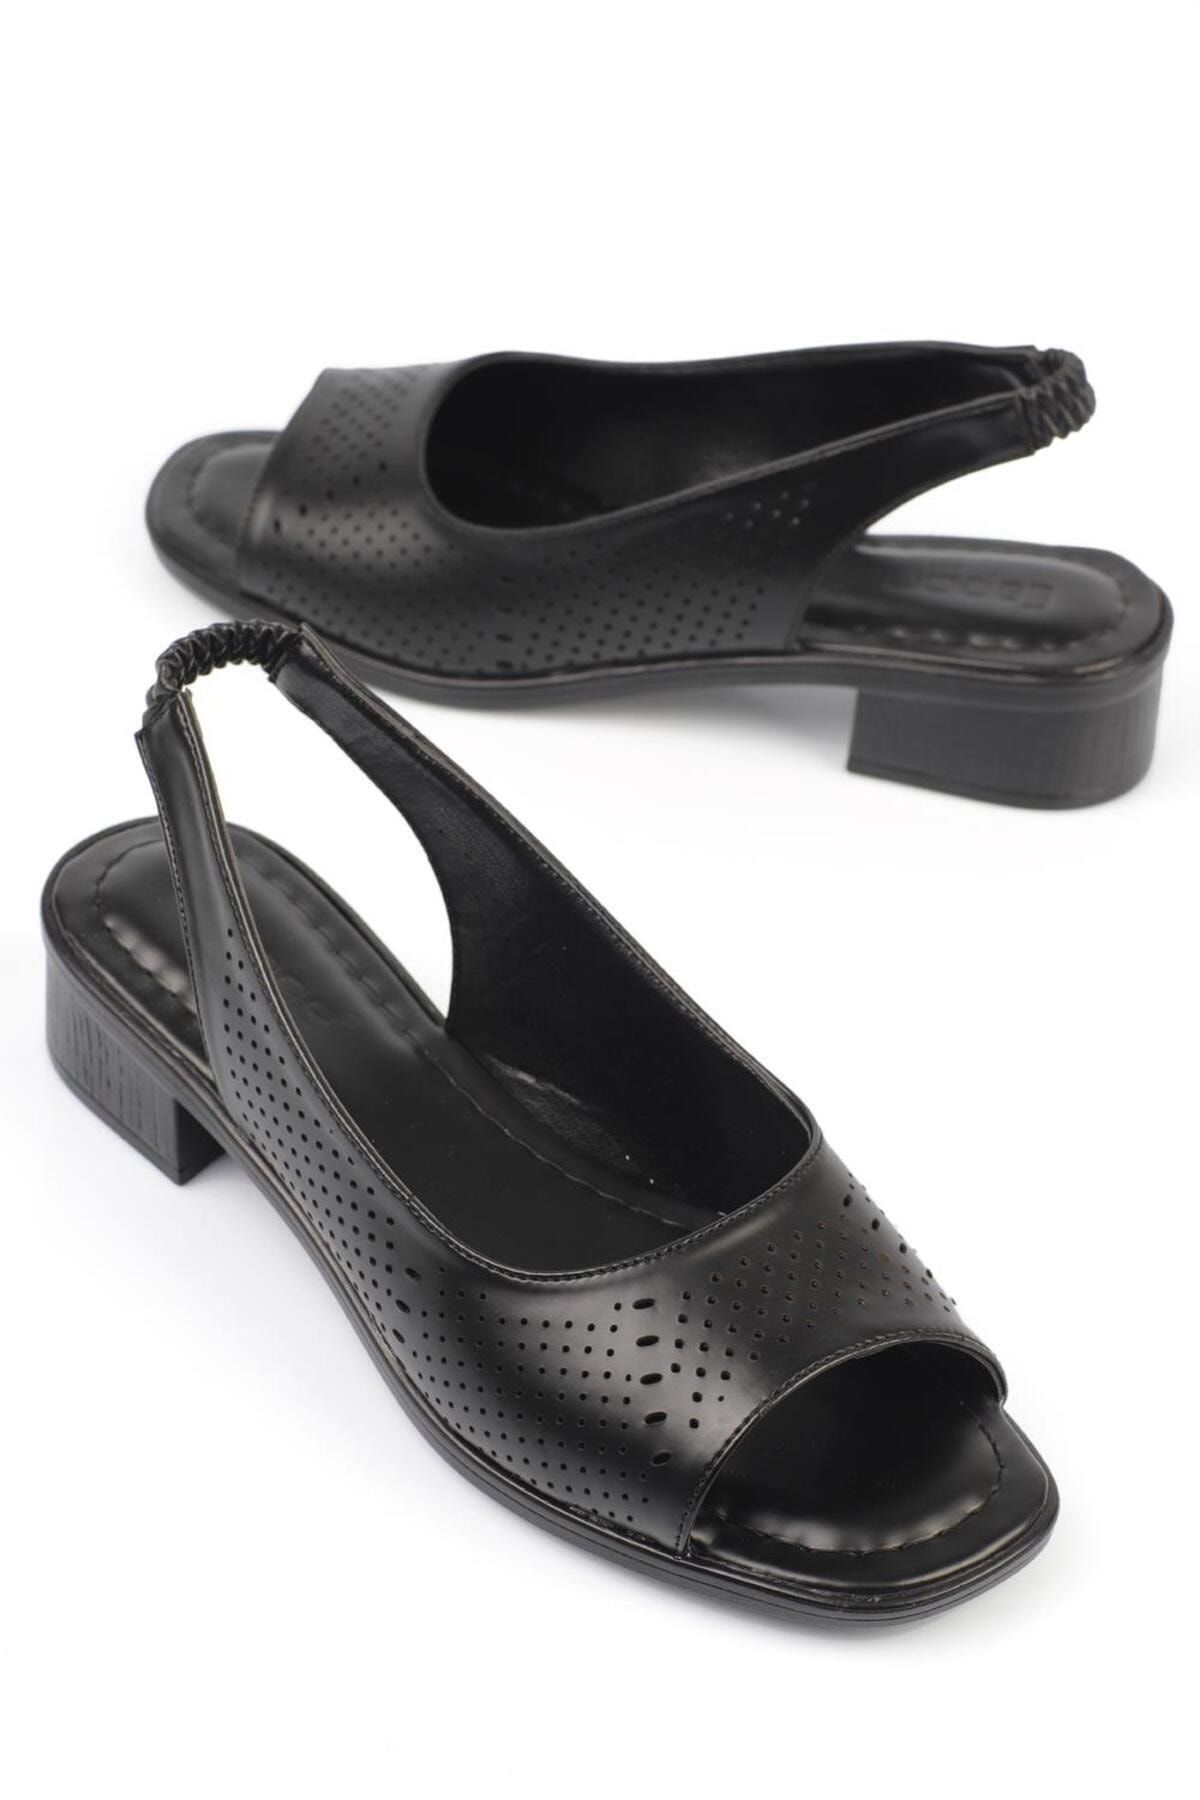 Capone Outfitters Capone Önü Açık Siyah Kadın Topuklu Ayakkabı 627-O12-CİL-01-00000